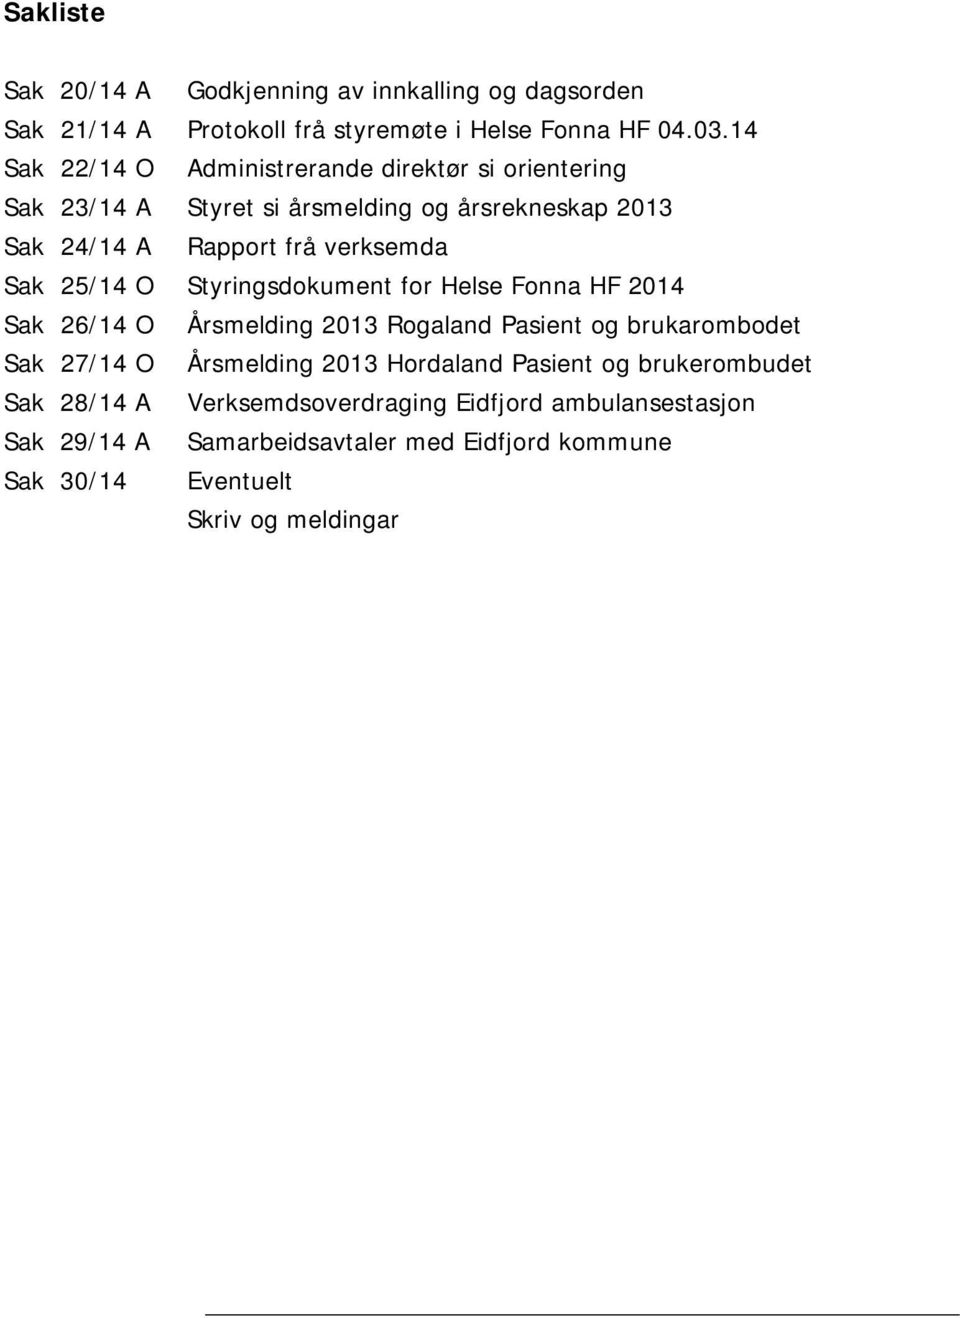 25/14 O Styringsdokument for Helse Fonna HF 2014 Sak 26/14 O Årsmelding 2013 Rogaland Pasient og brukarombodet Sak 27/14 O Årsmelding 2013